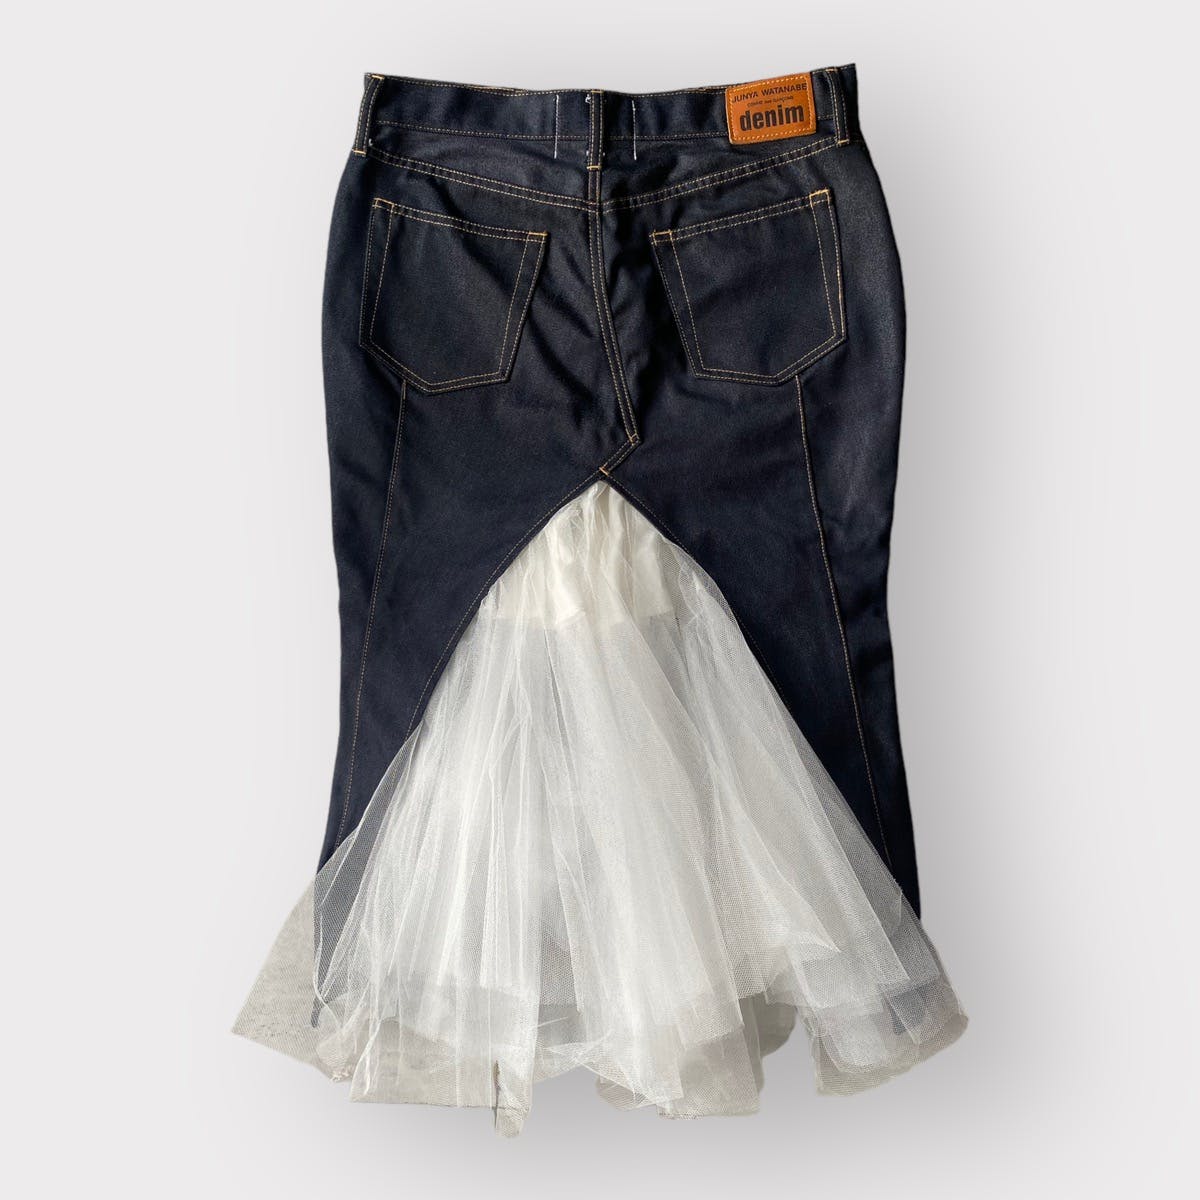 SS19 Deconstructed Denim Skirt - 1